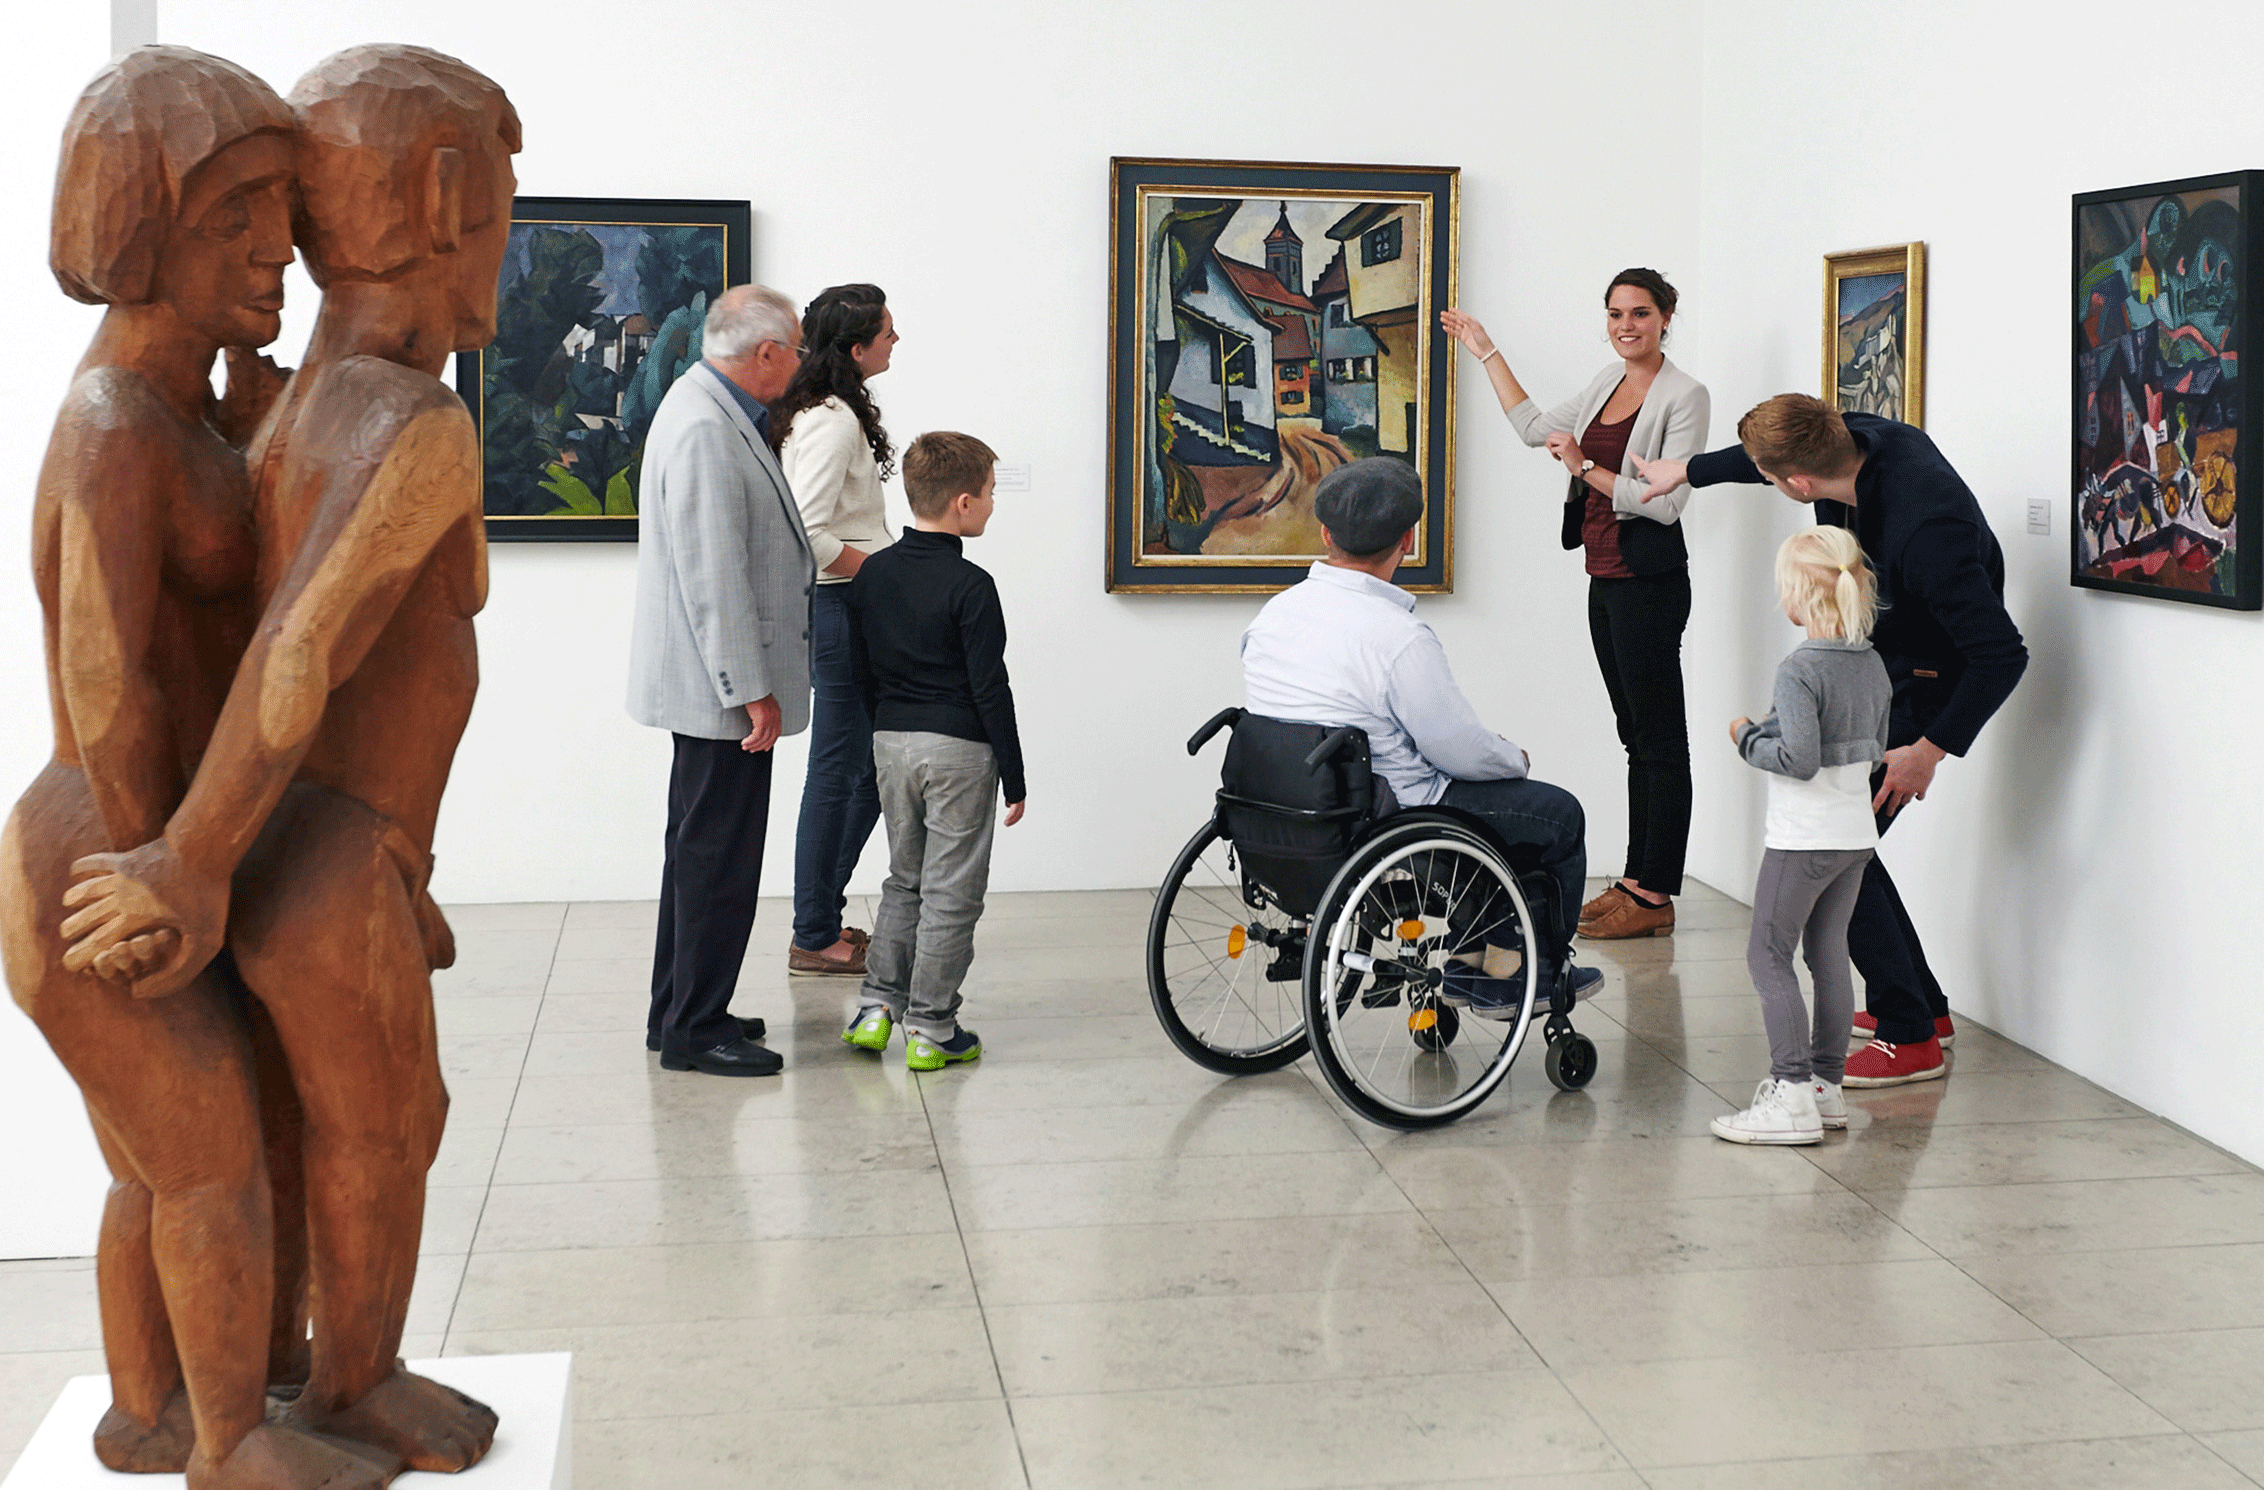 Blick in die Dauerausstellung des Museums für Neue Kunst. Personen betrachten ein Gemälde und bekommen dazu Informationen von einer Frau.